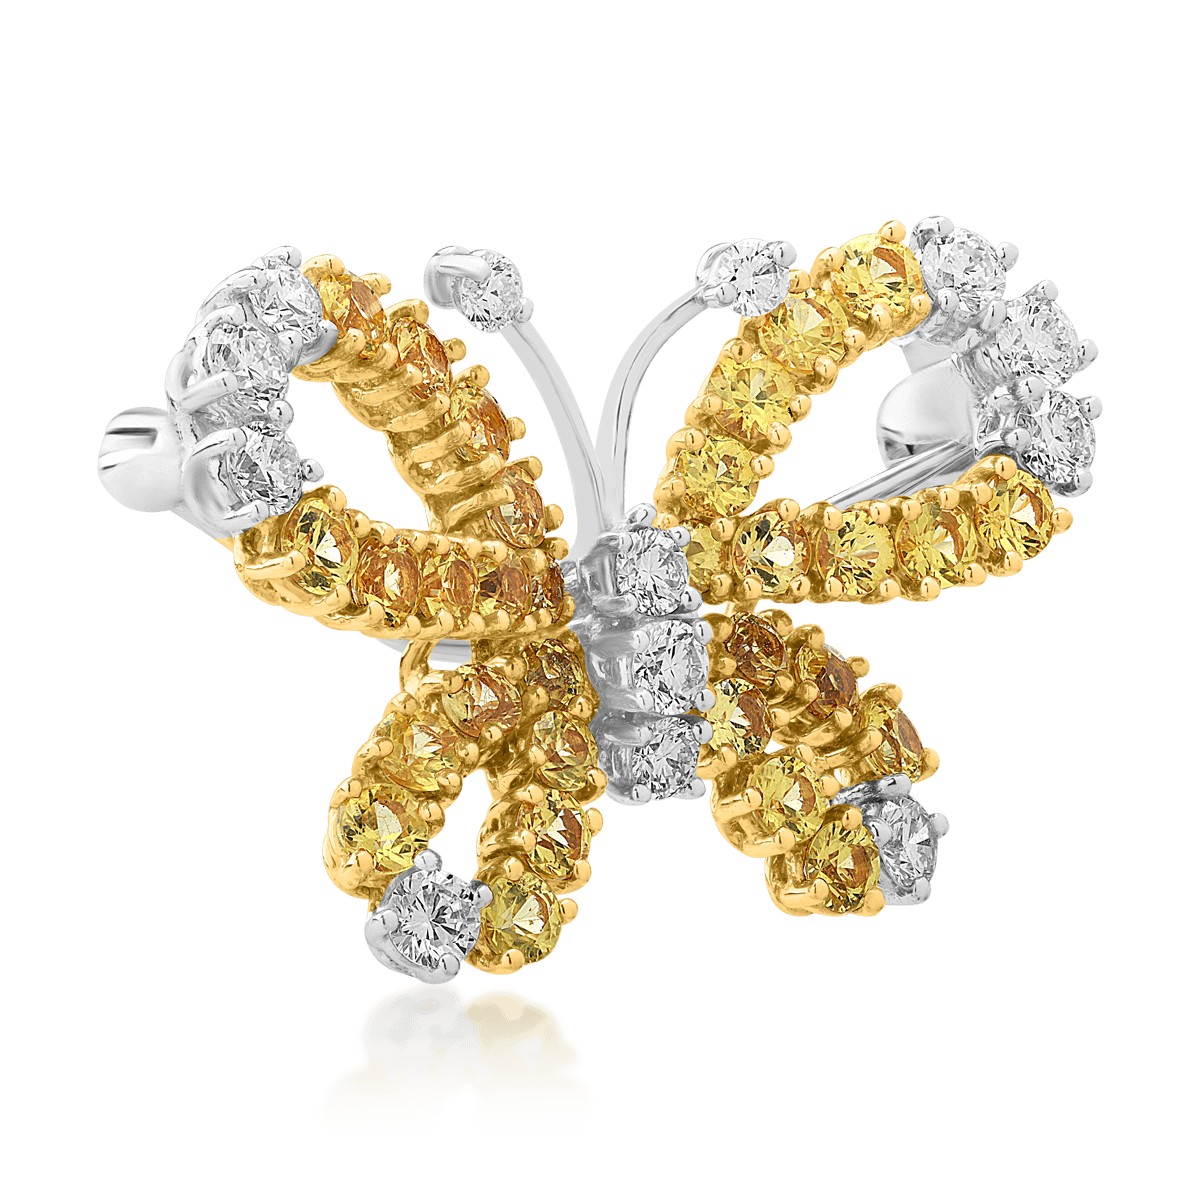 Bross Pillangó 18K-os fehér-sárga aranyból 1,92ct sárga zafírral és 0,68ct gyémánttal